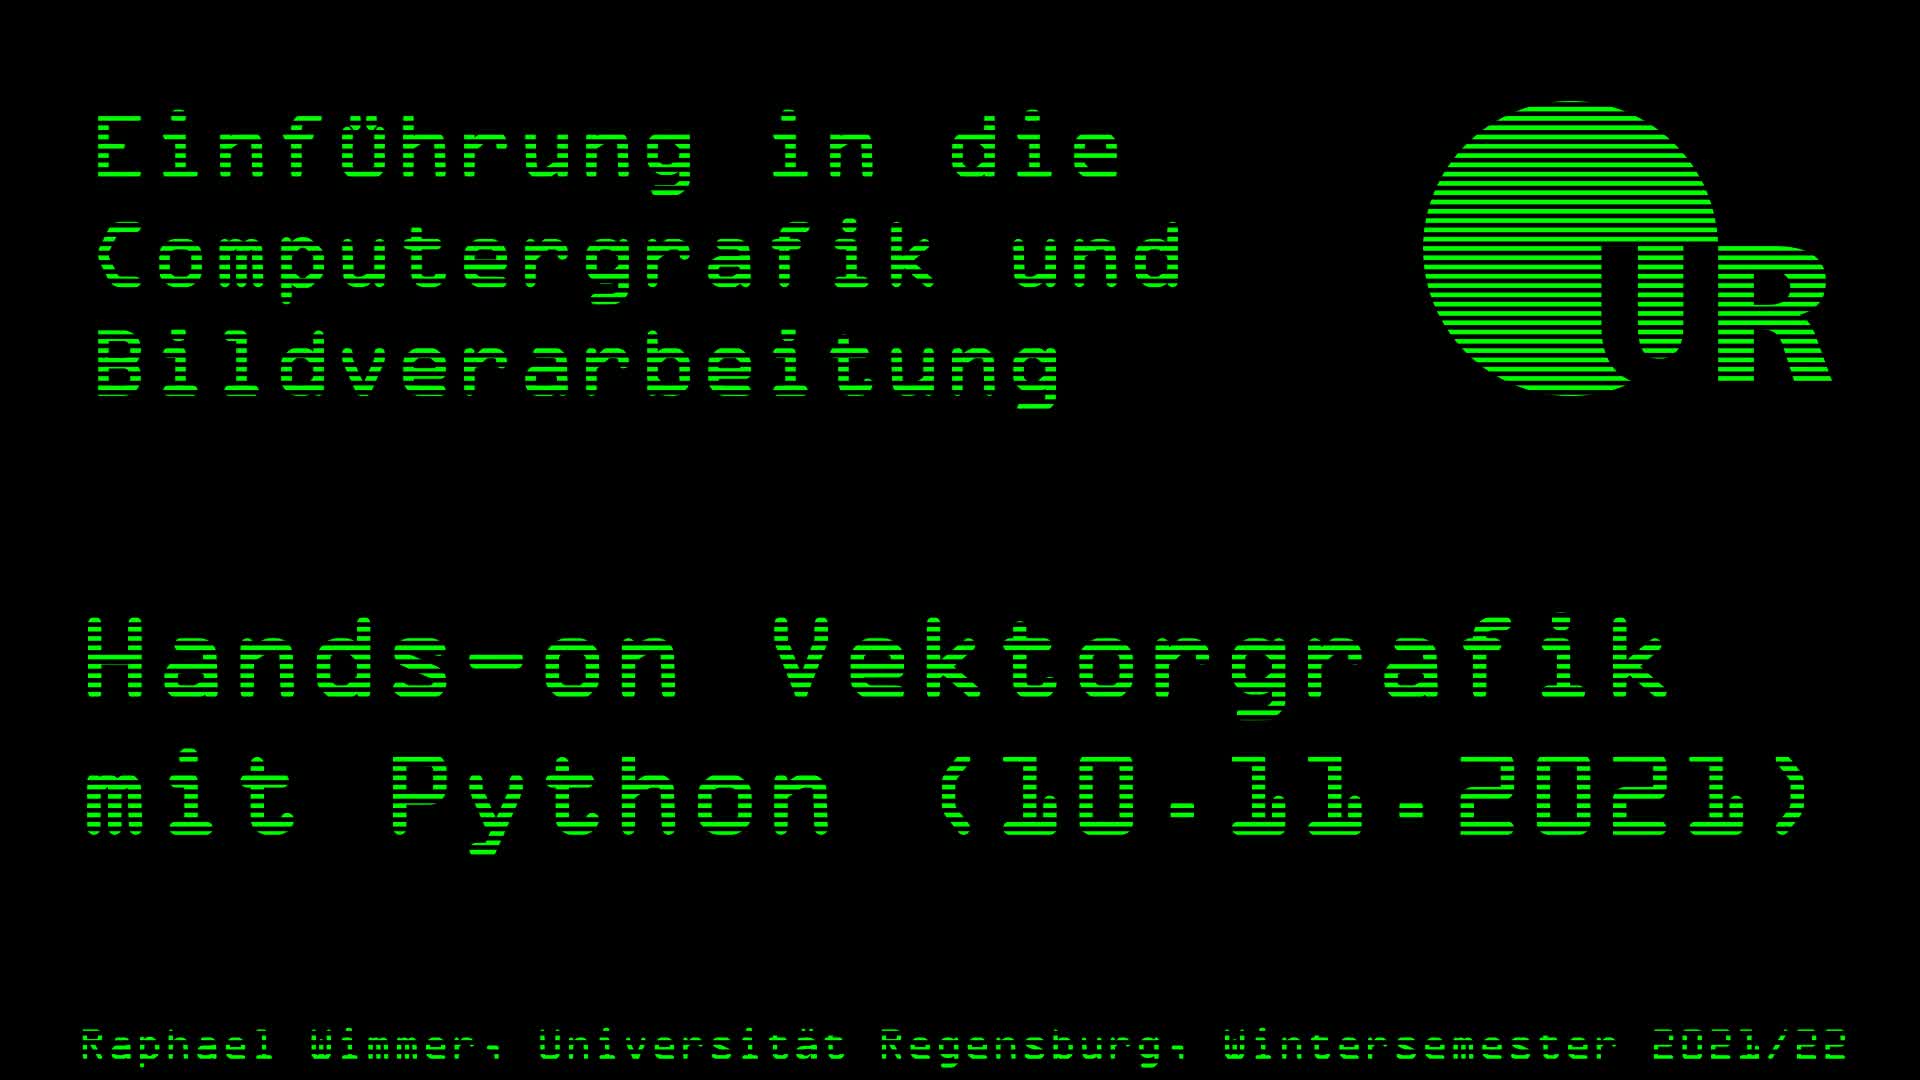 Computergrafik und Bildverarbeitung 08: Hands-on Vektorgrafik mit Python (10.11.2021)